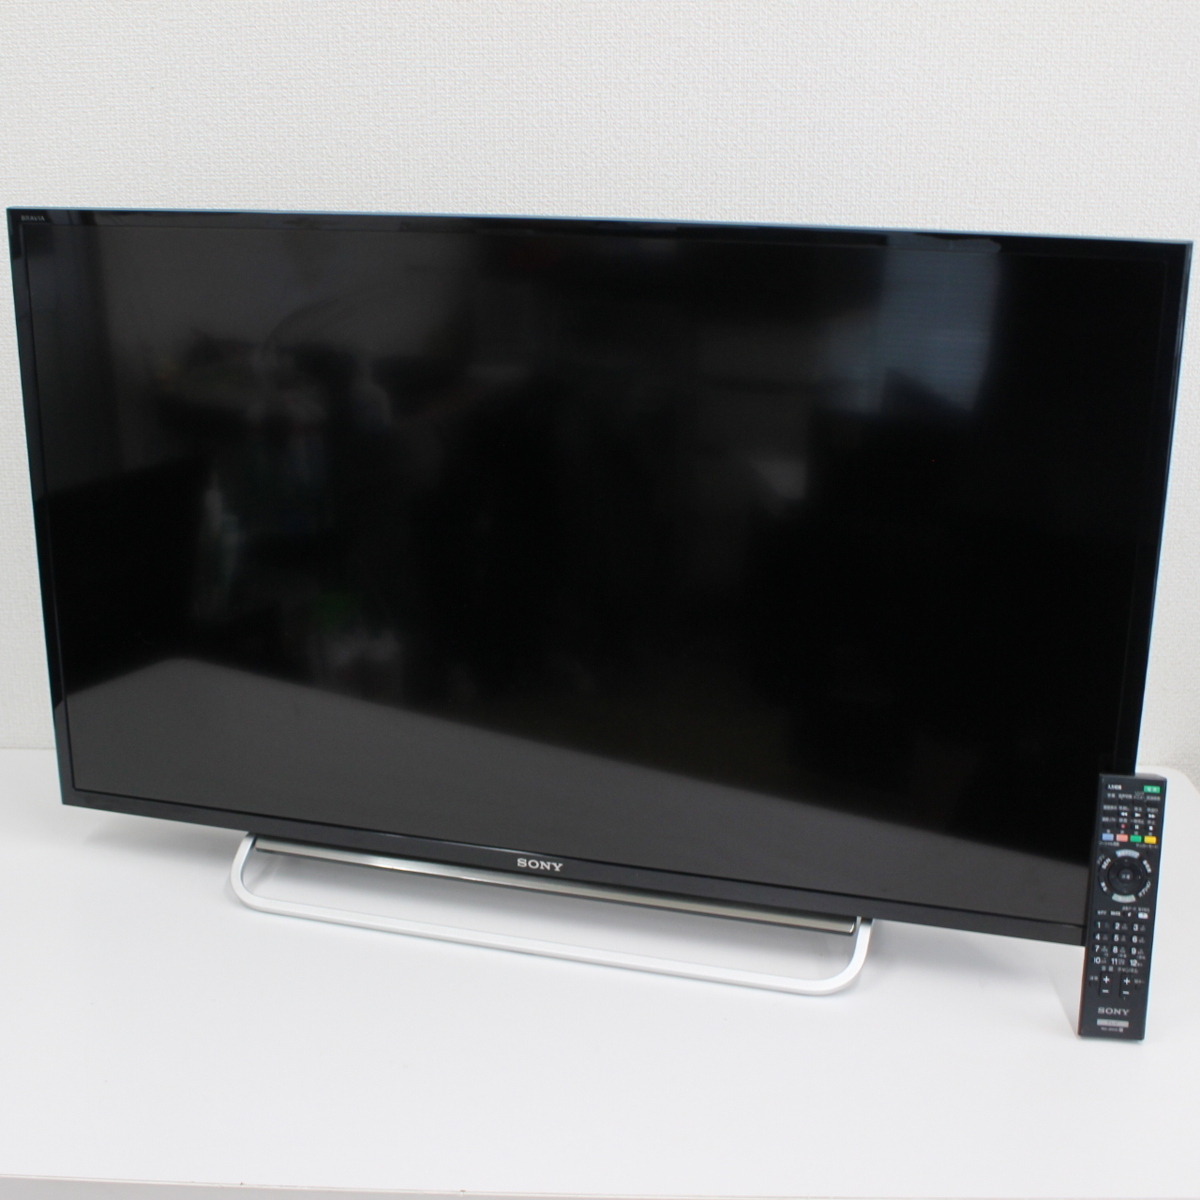 東京都豊島区にて ソニー デジタルフルハイビジョン液晶テレビ KDL-40W600B 2014年製 を出張買取させて頂きました。